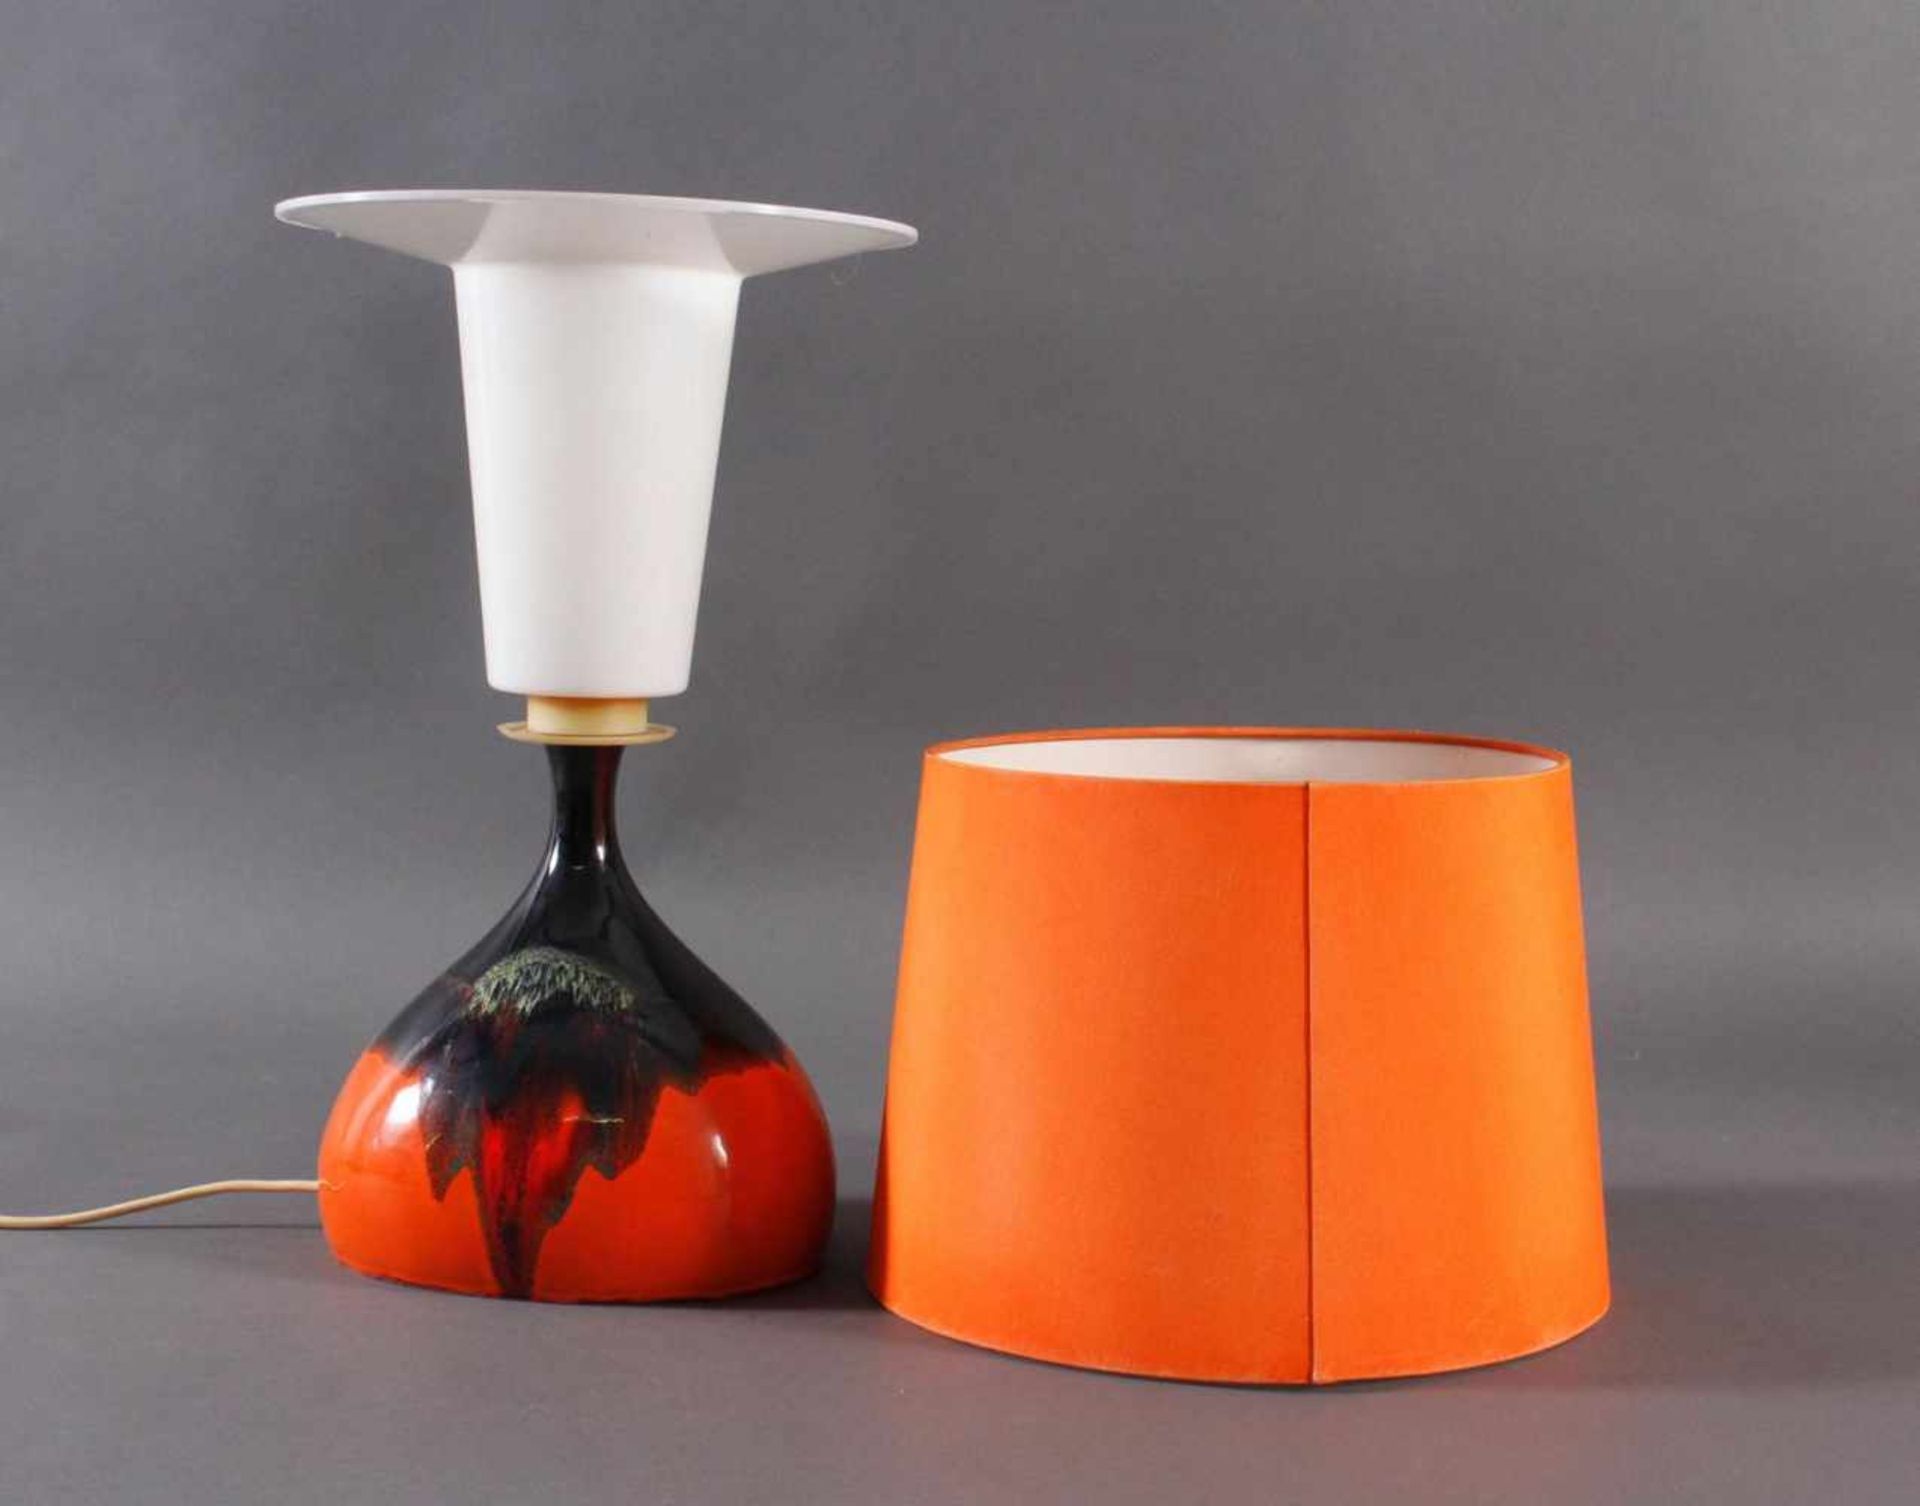 Tischlampe von Rosenthal DesignKeramik-Lampe, Entwurf Björn Wiinblad für Rosenthal aus den 1970ern - Image 2 of 3